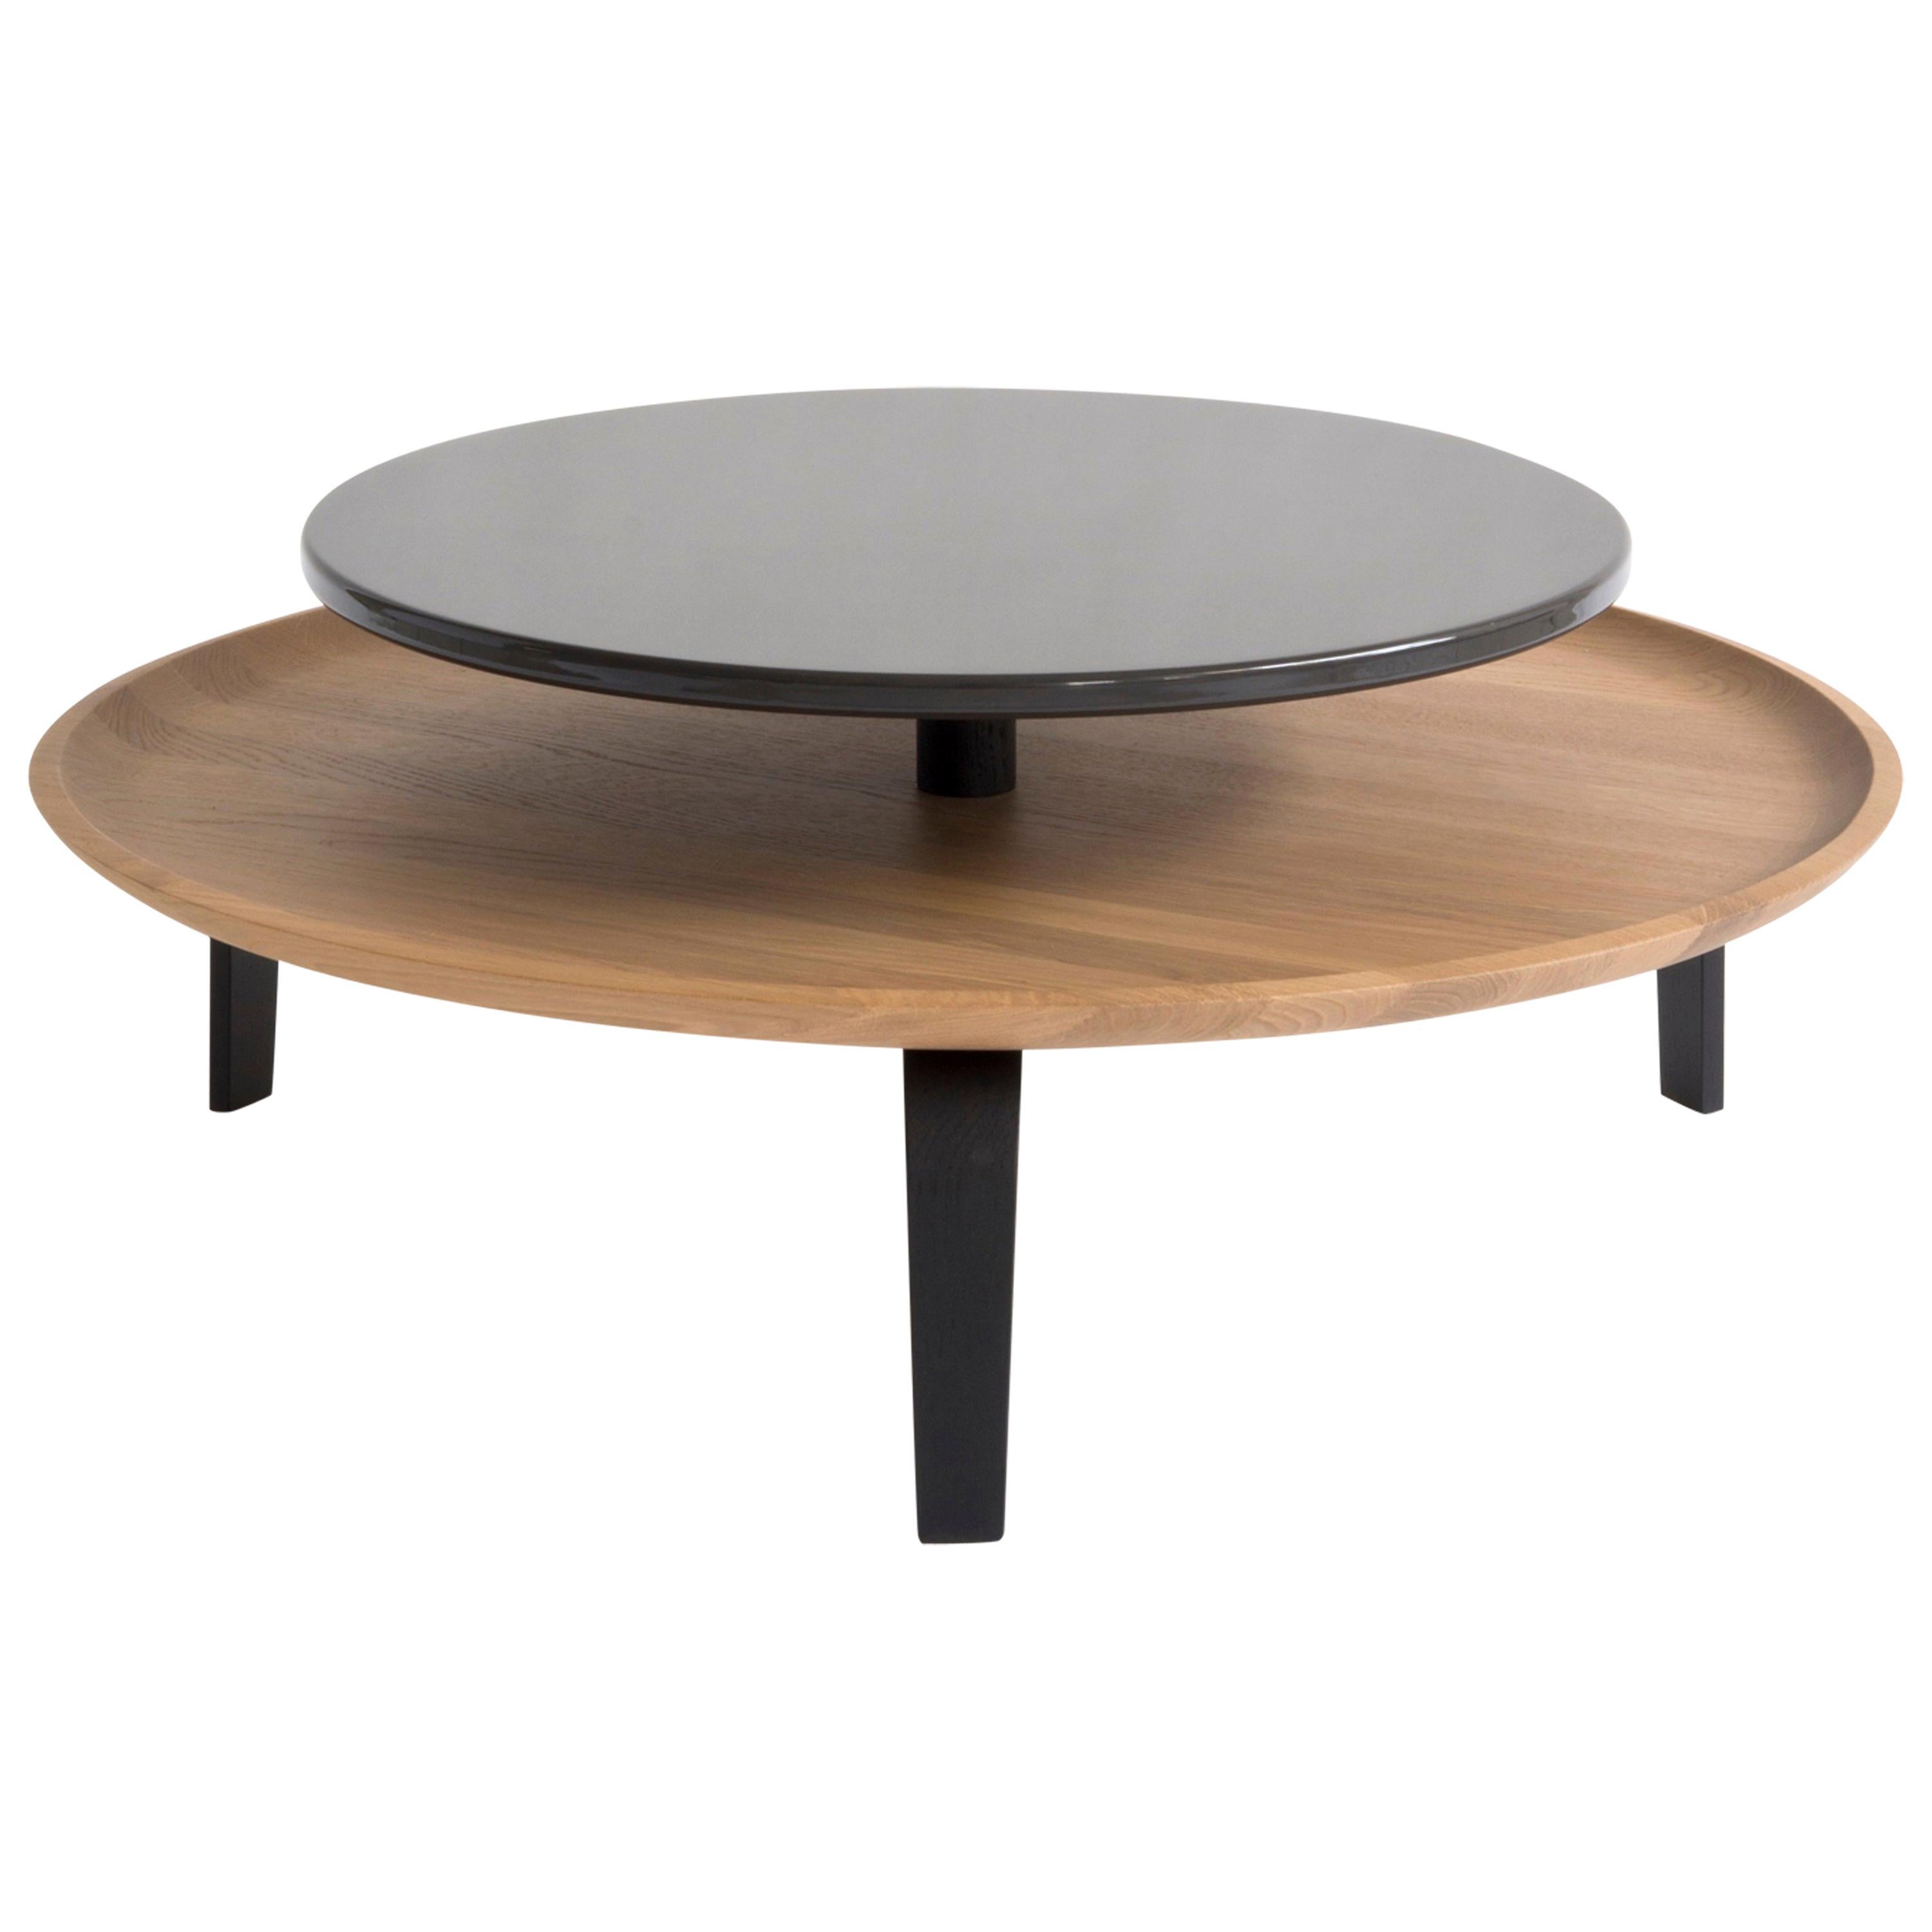 Table basse ronde Secreto par Colé, Oak Nature et plateau laqué noir